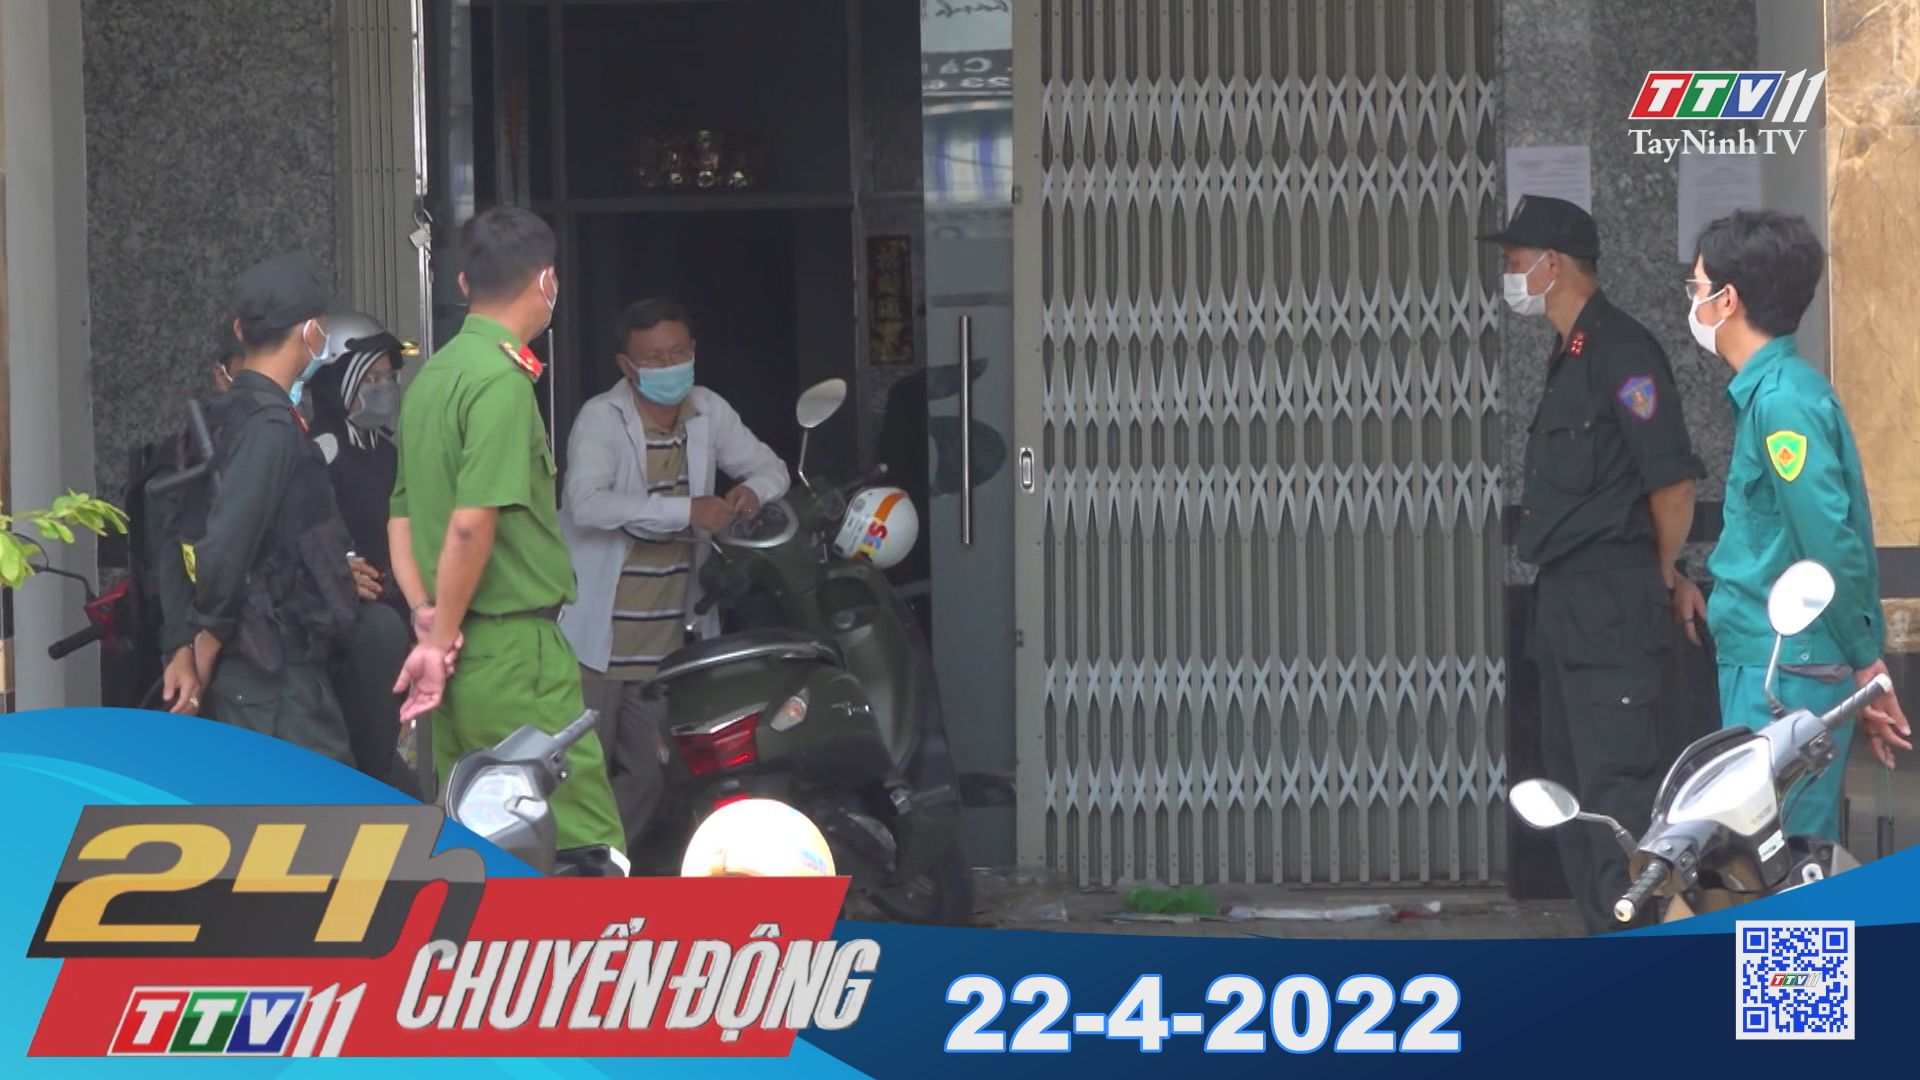 24h Chuyển động 22-4-2022 | Tin tức hôm nay | TayNinhTV